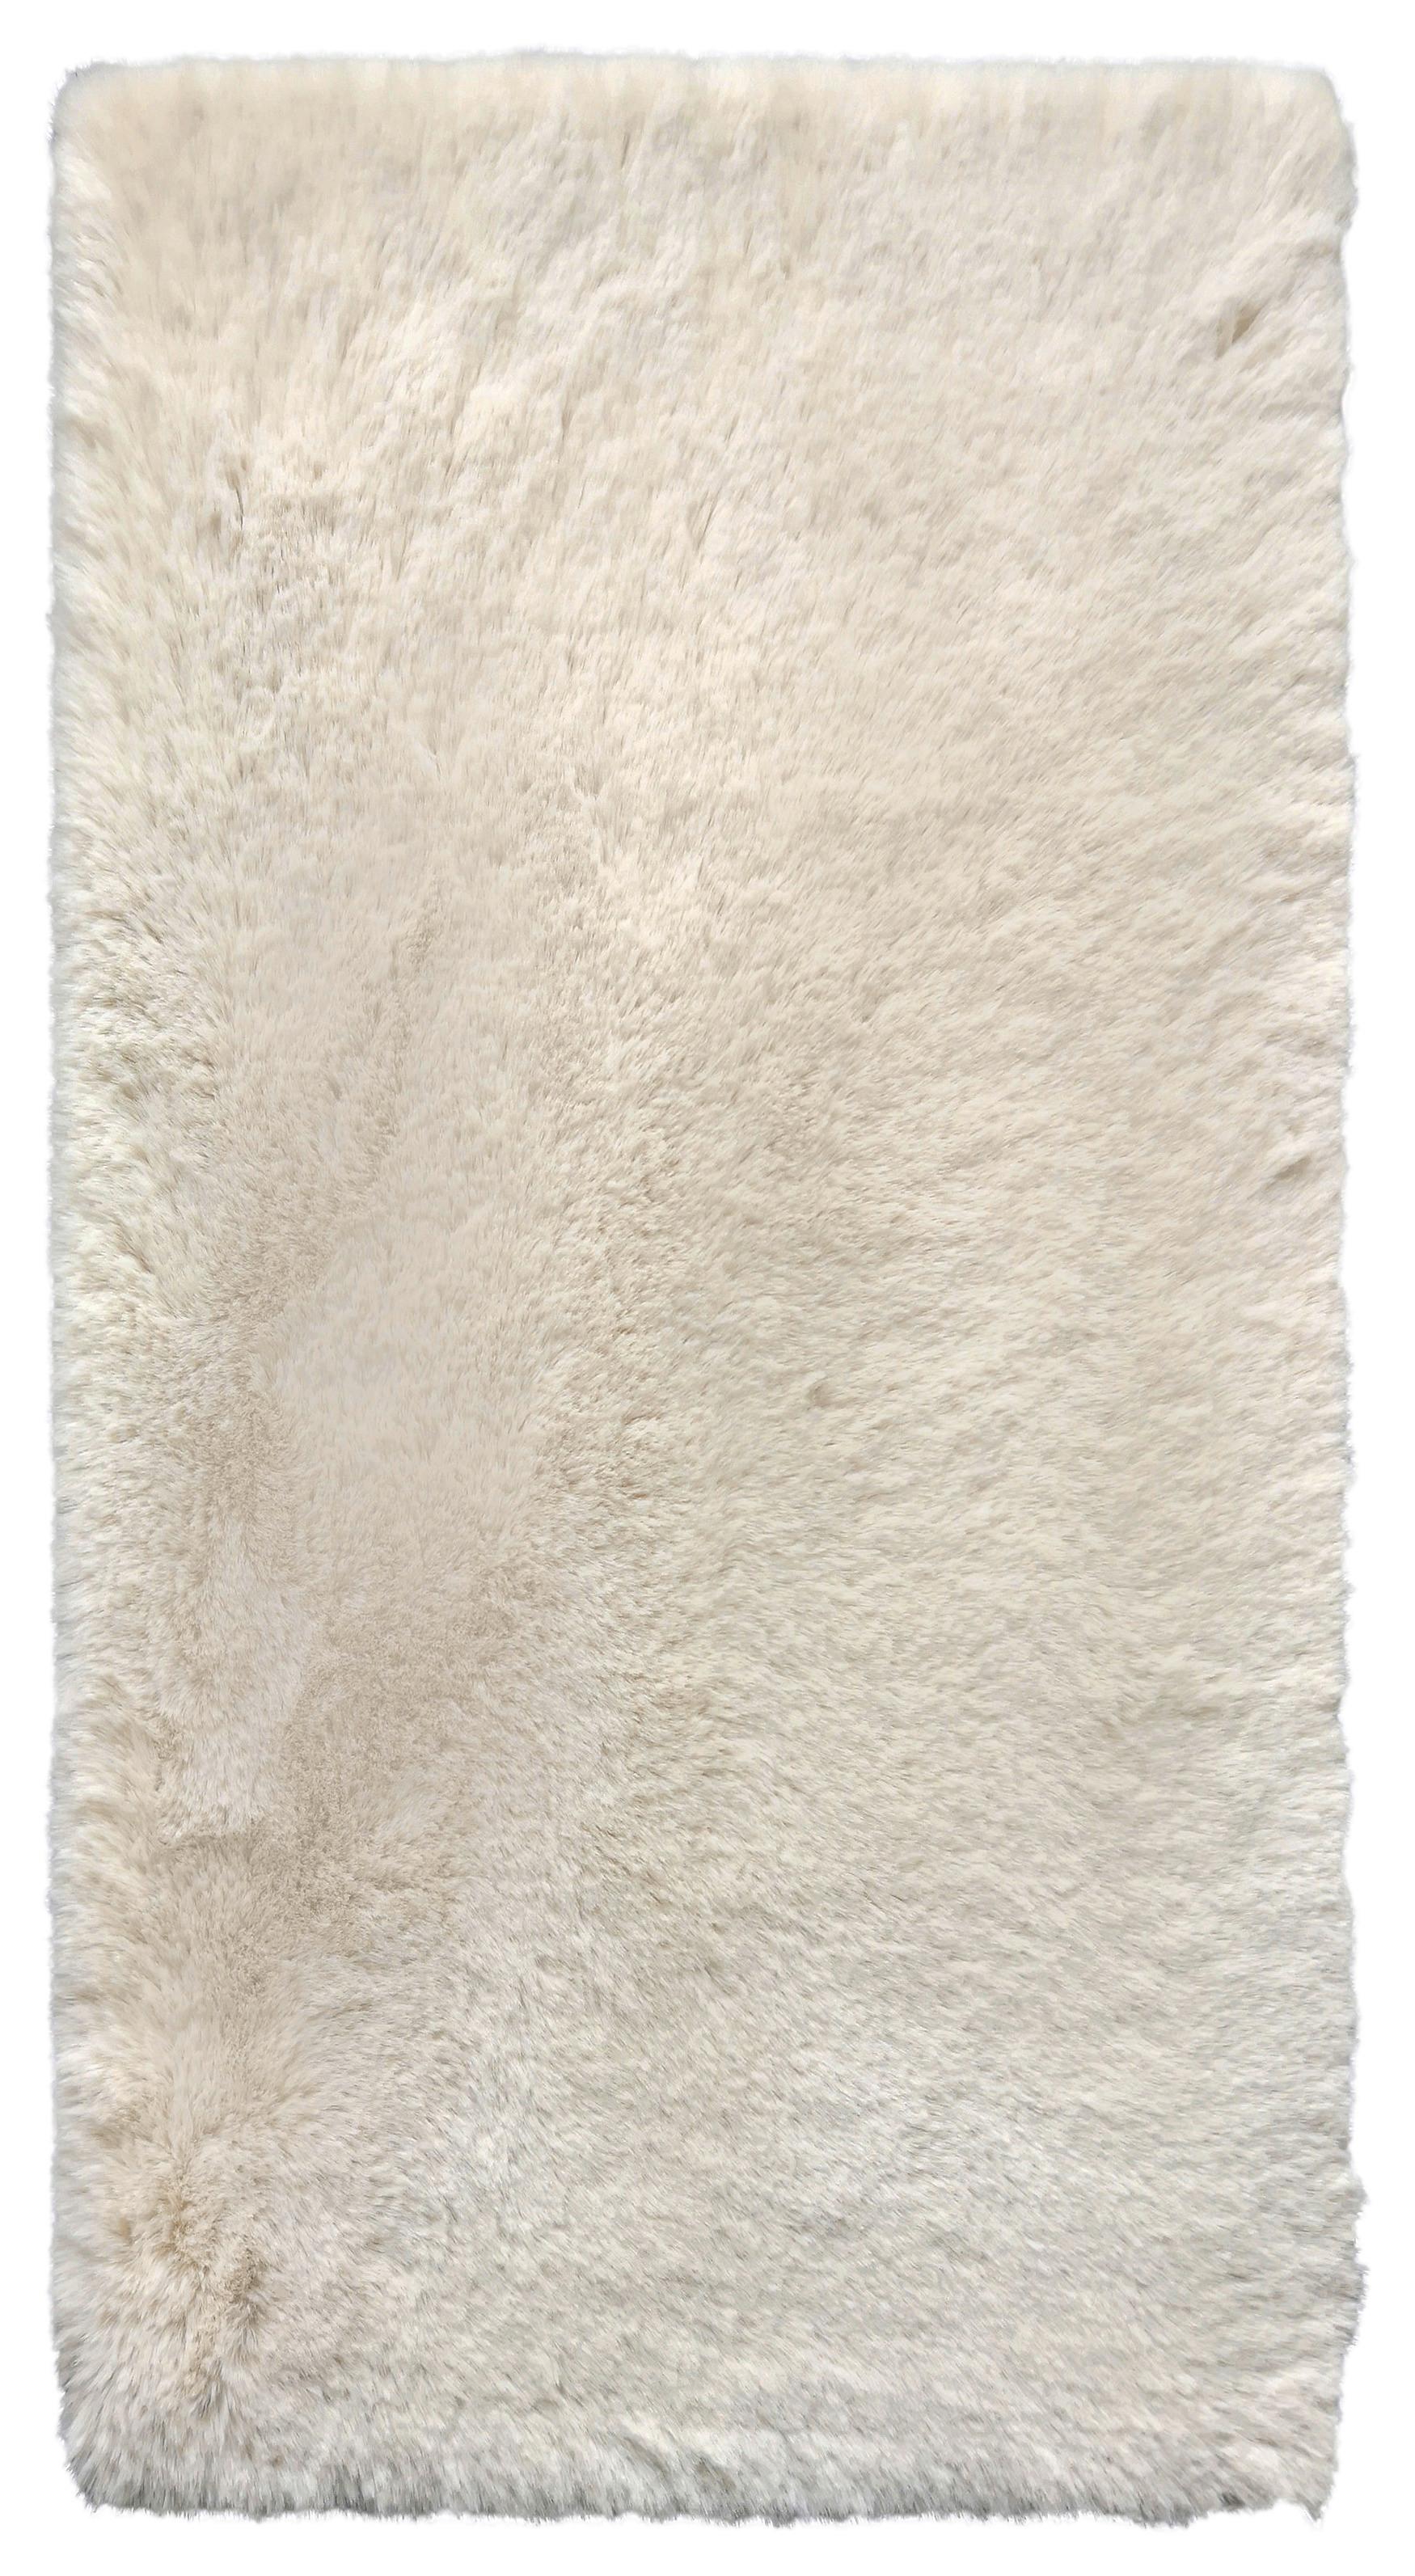 Umělá Kožešina Caroline 1, 80/150cm, Béžová - béžová, textil (80/150cm) - Modern Living